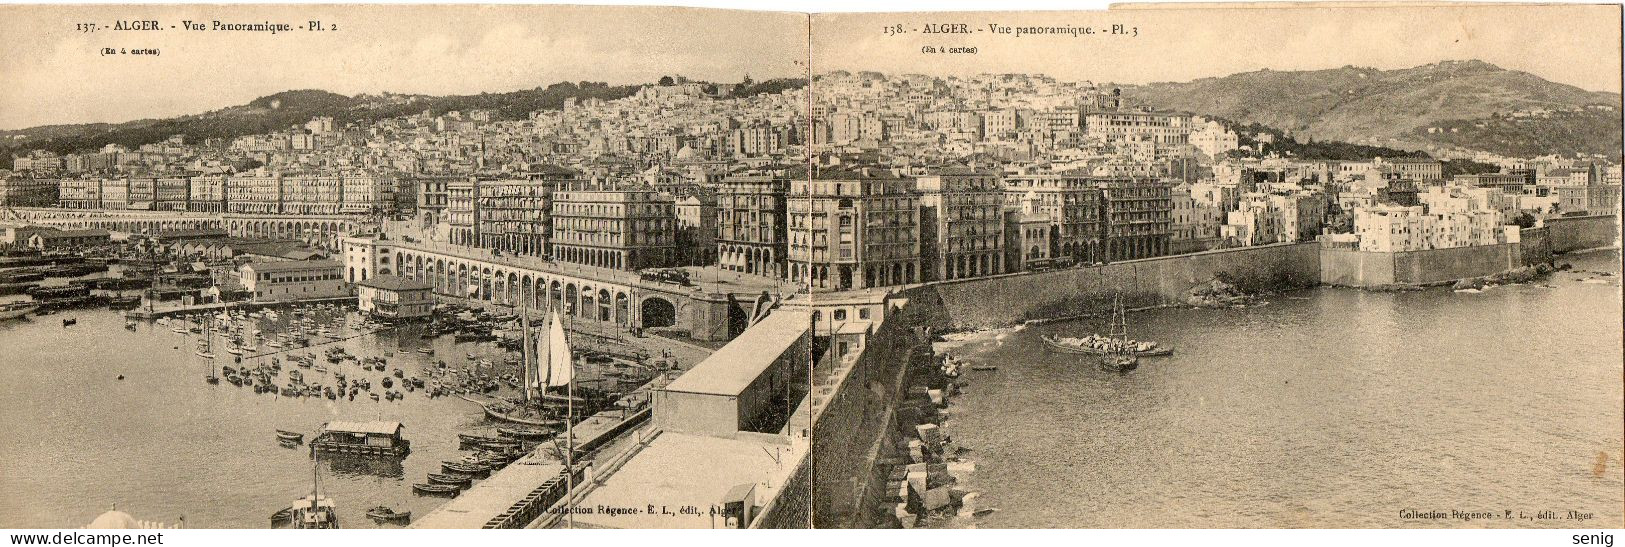 ALGERIE - ALGER - 137 138 139 - Vue Panoramique  PL2, 3 & 4 - Collect. Régence E. L. édit. (Leroux) - - Algiers